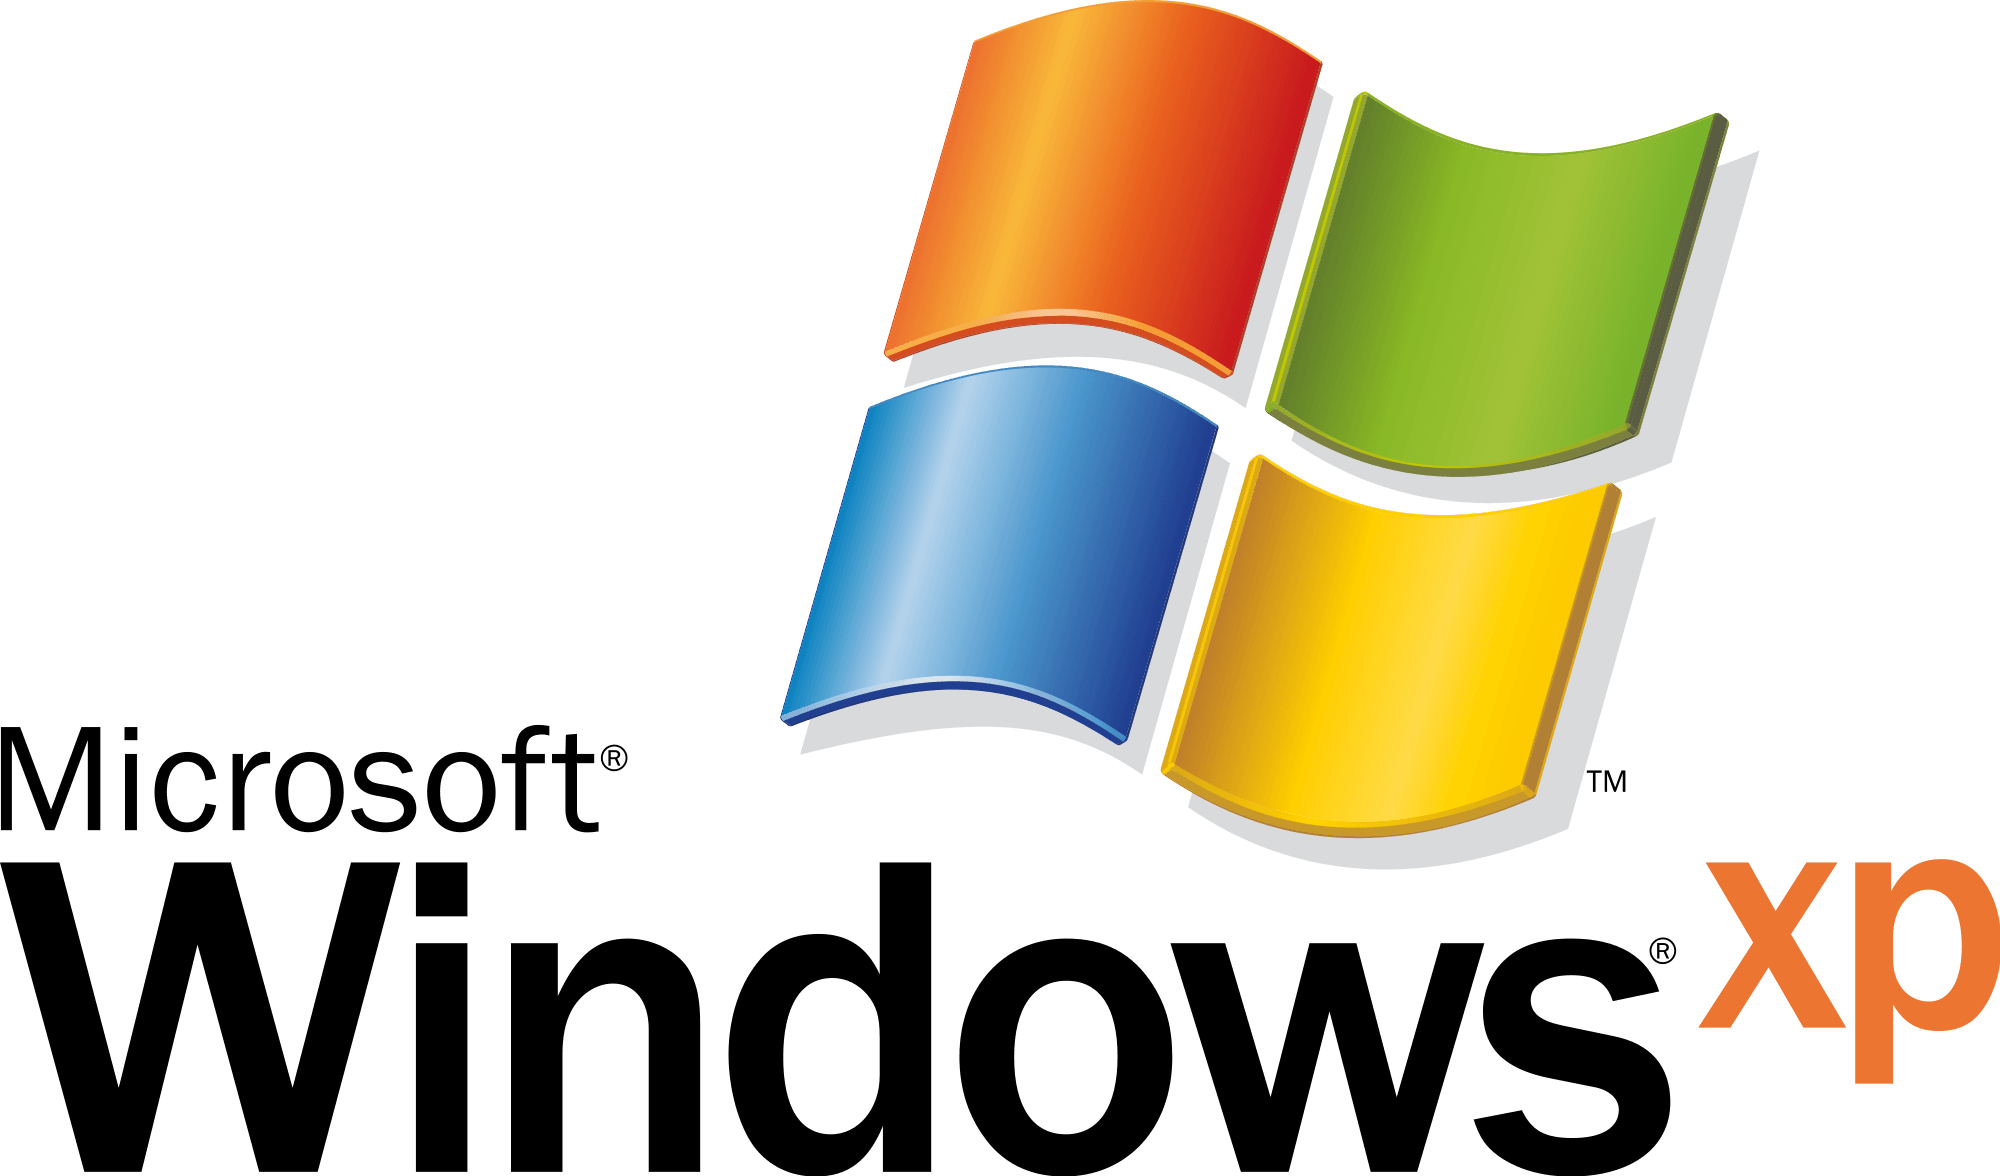 Windows Versions Logo - Windows logos PNG image free download, windows logo PNG